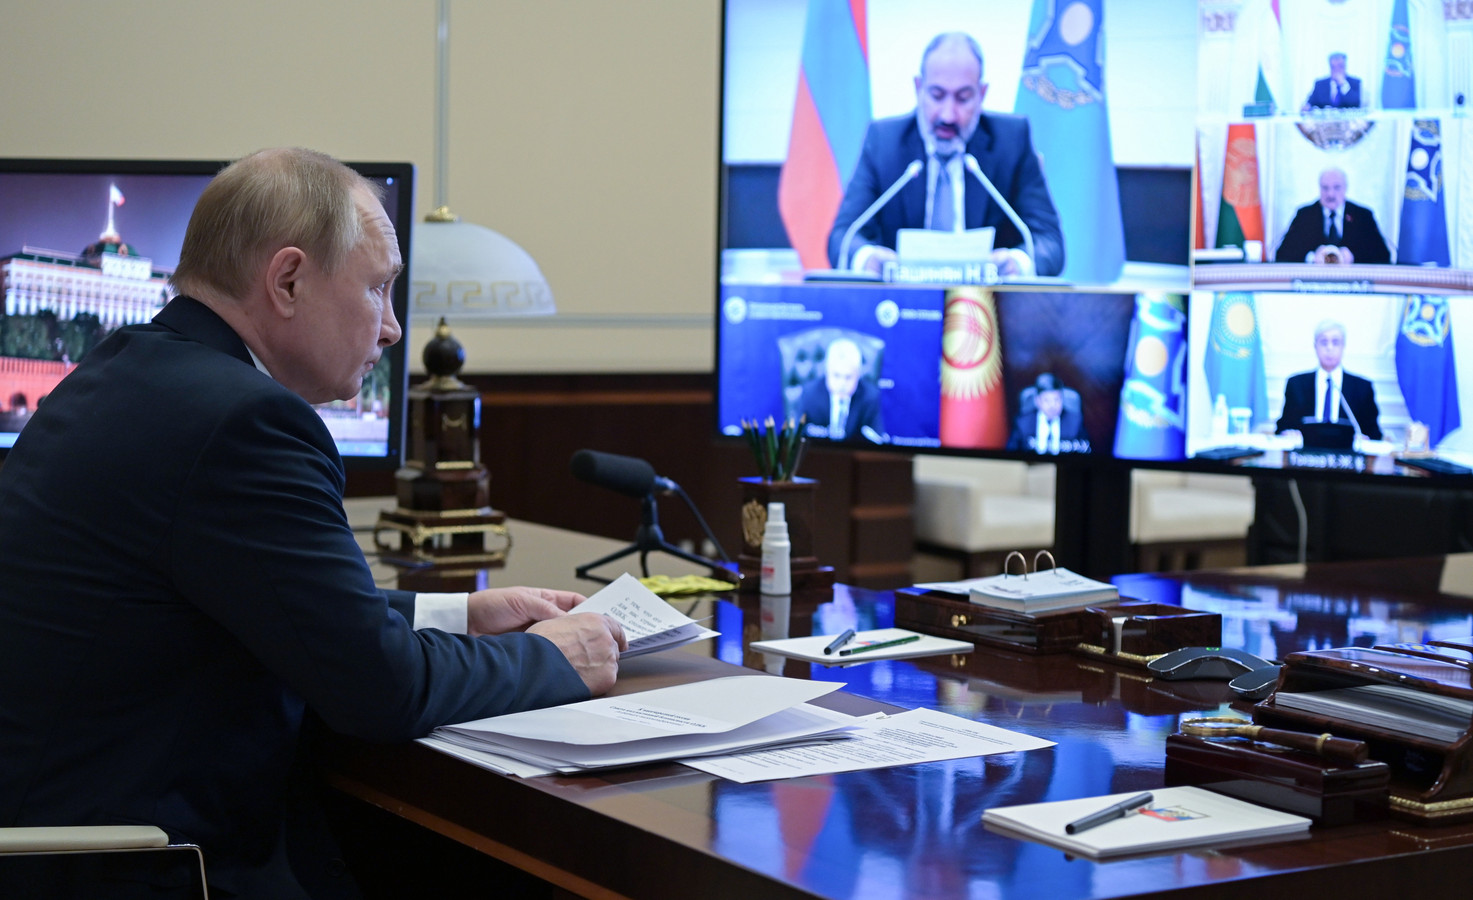 De Russische president Poetin videobelt maandagochtend met collega's over de situatie in Kazachstan.